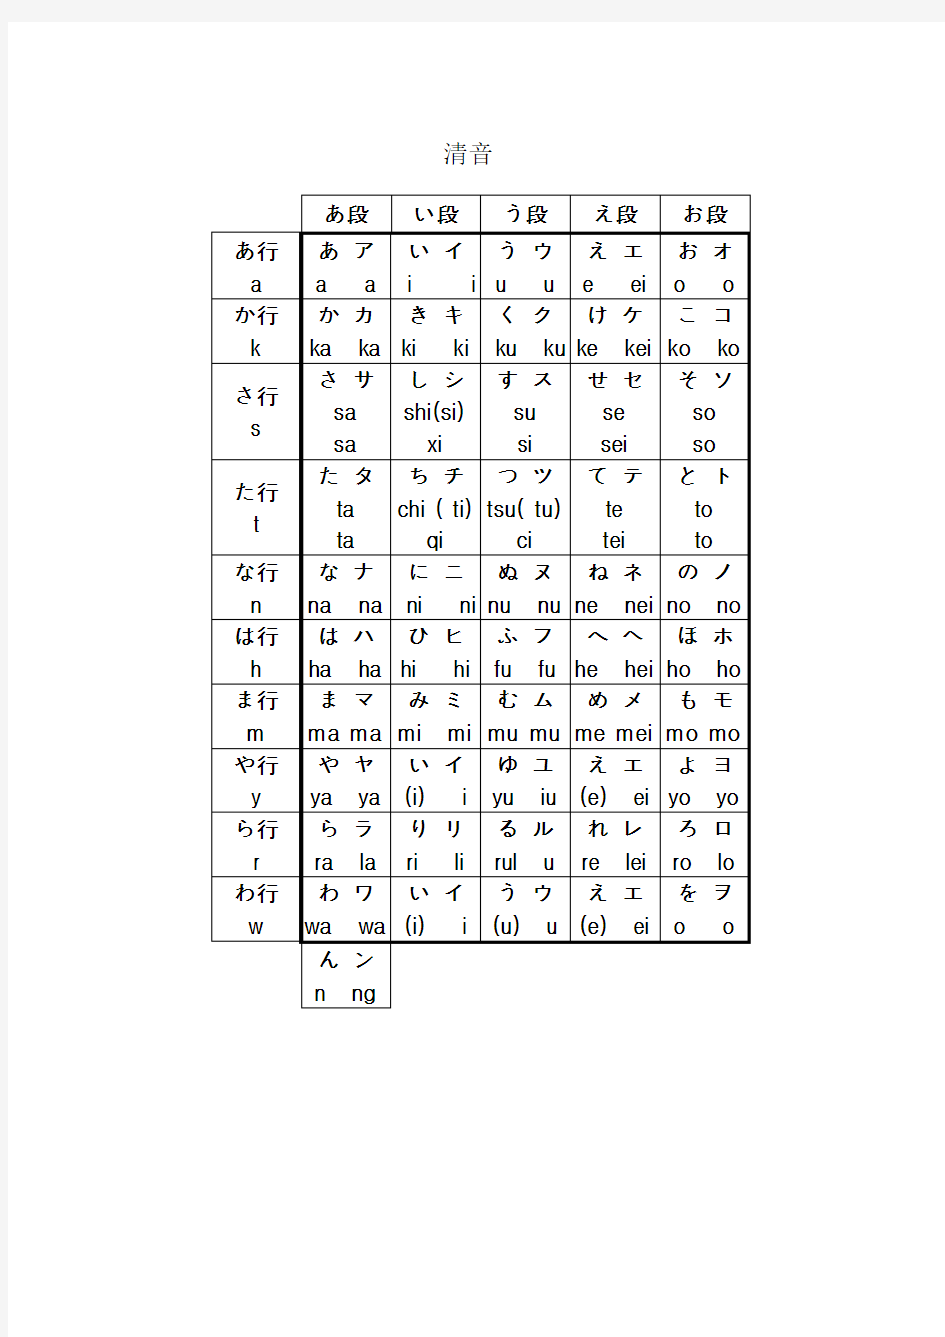 最新带汉语拼音的五十音图表